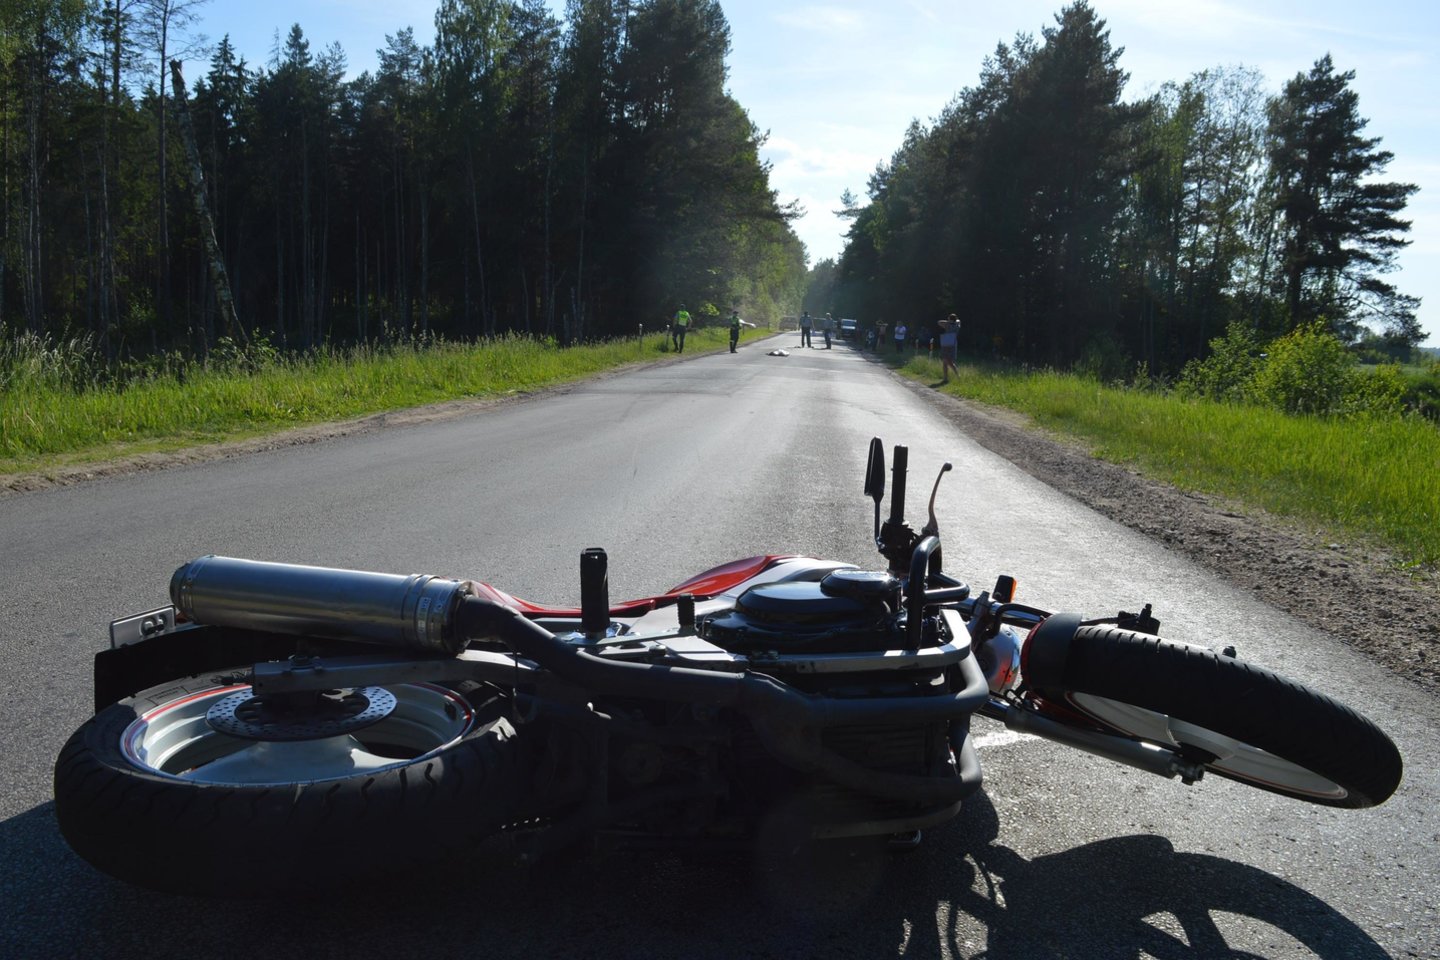 Šiaulių rajono kelyje Bubiai – Ramučiai išvažiavusi į priešingos krypties eismo juostą ir susidūrusi su automobiliu žuvo motociklininkė. <br> Policijos nuotr.